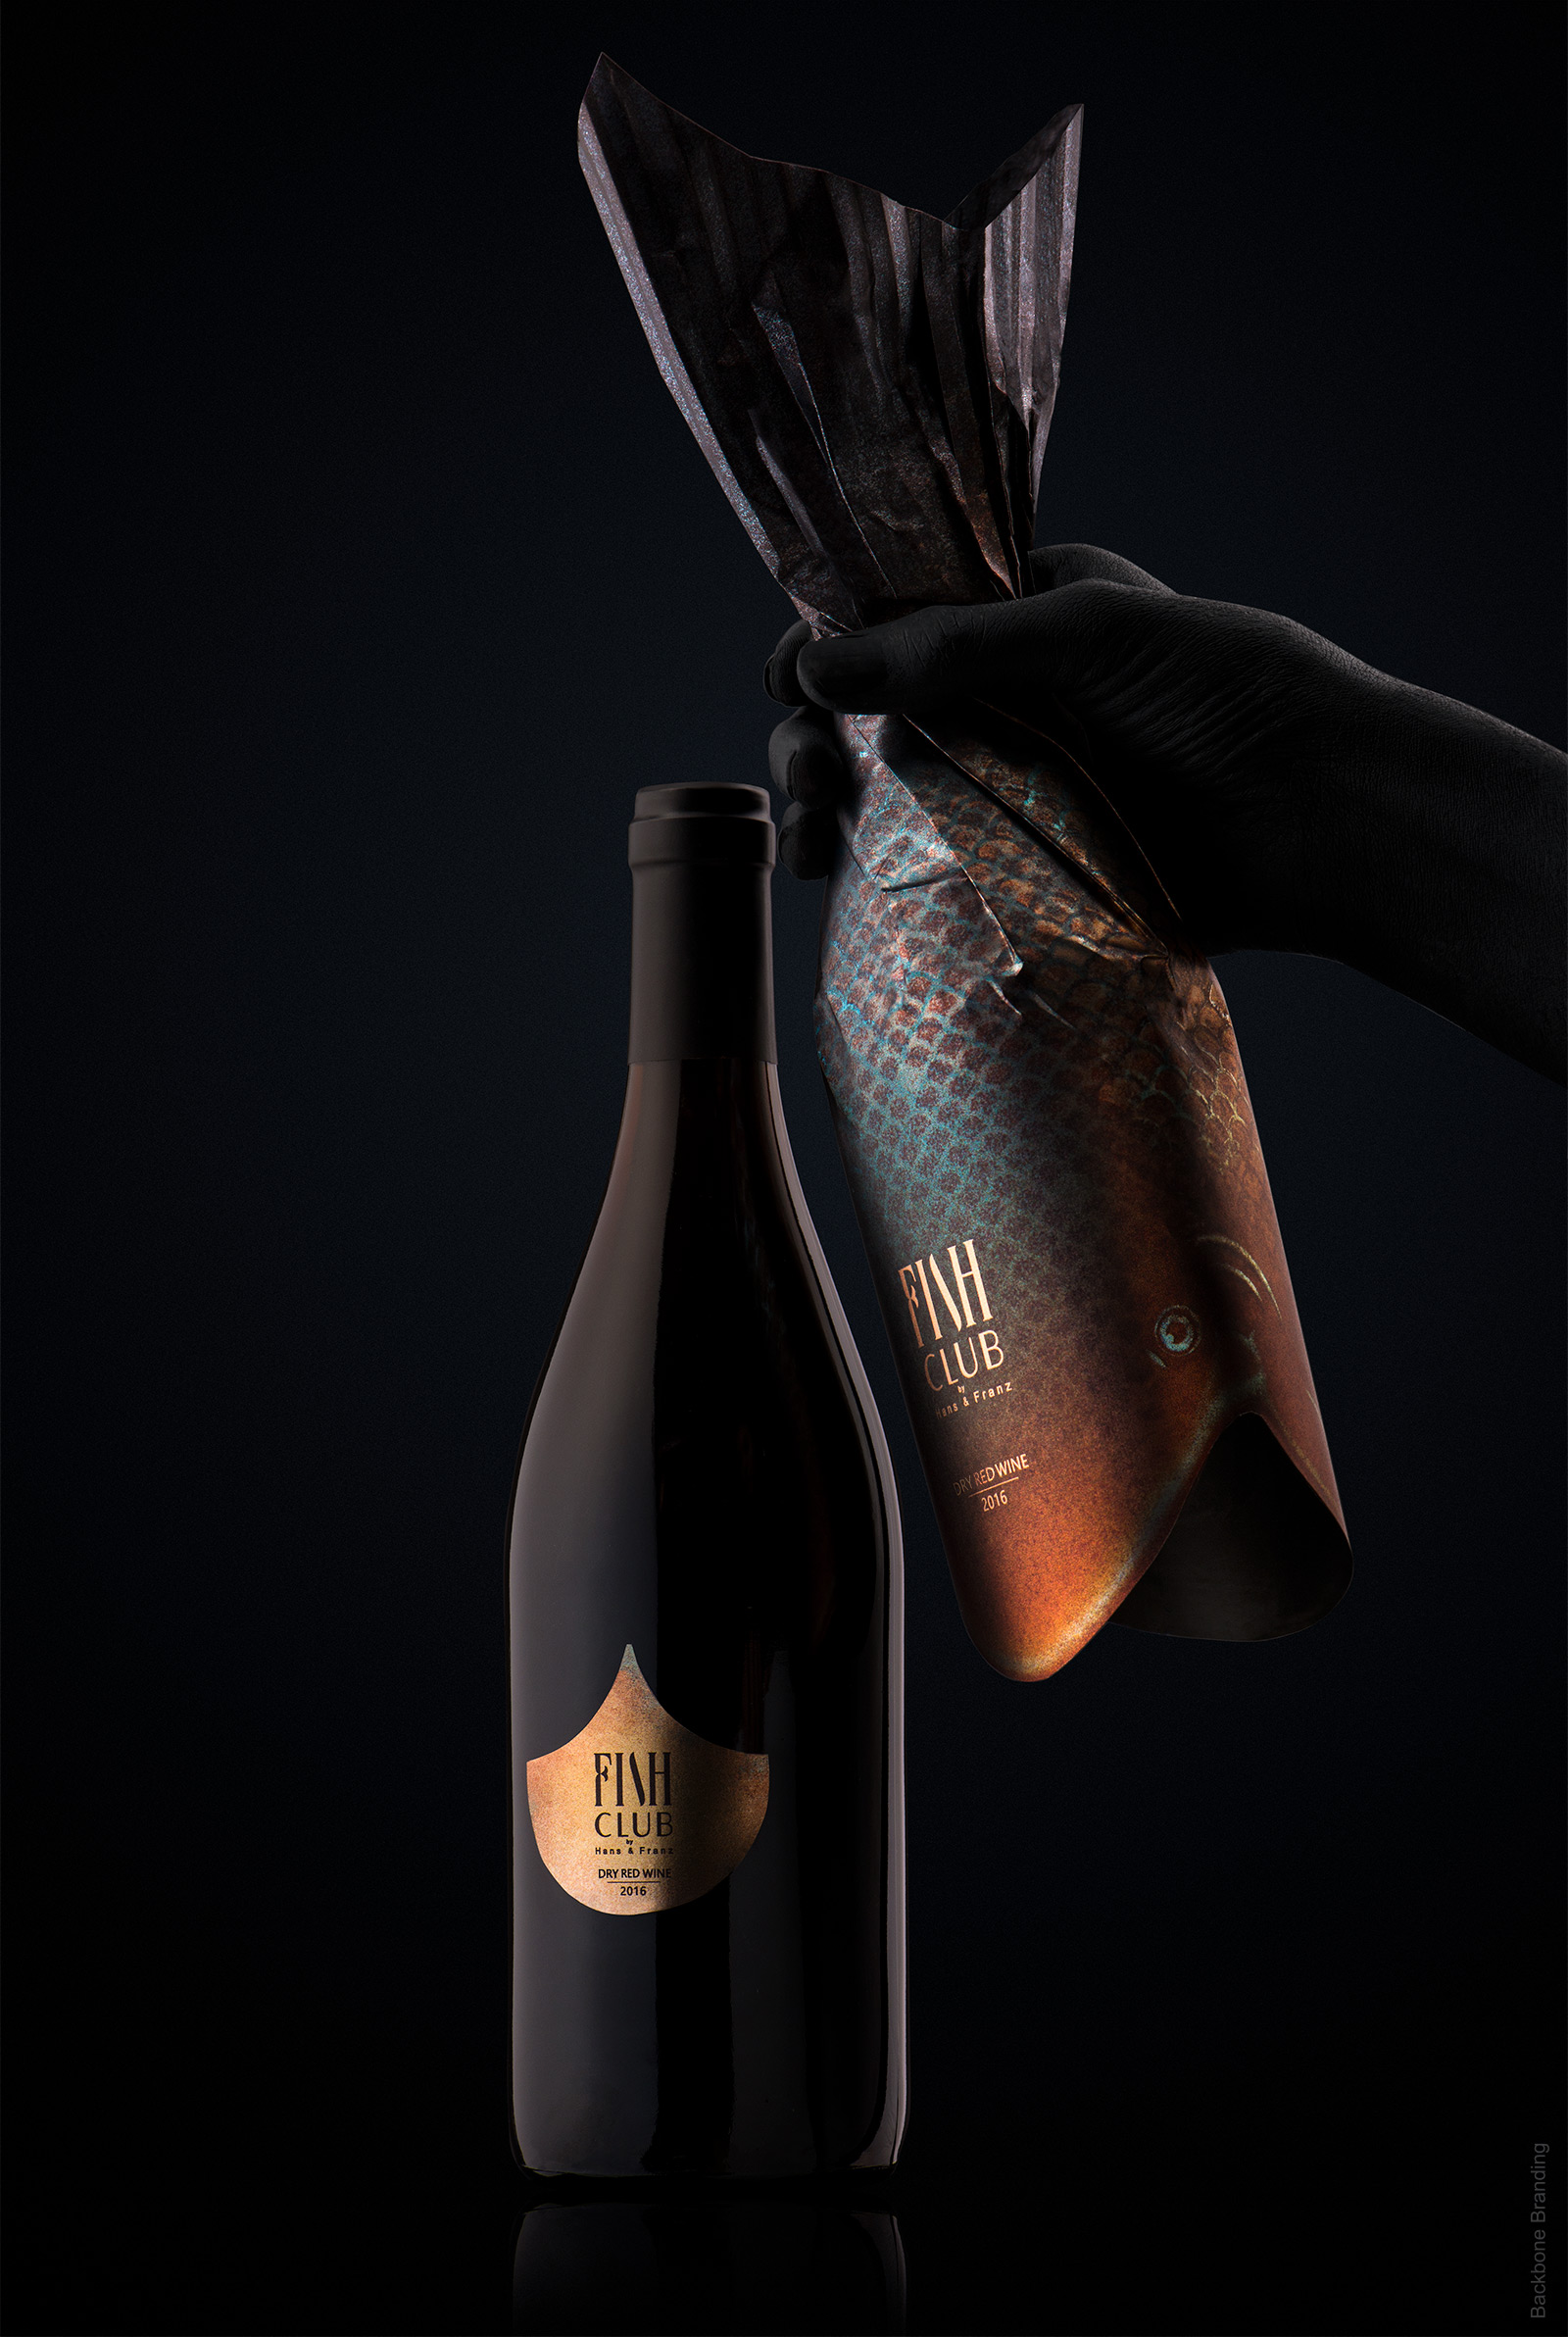 งานดีไซน์กับบรรจุภัณฑ์ Food packaging design Fish Club Wine